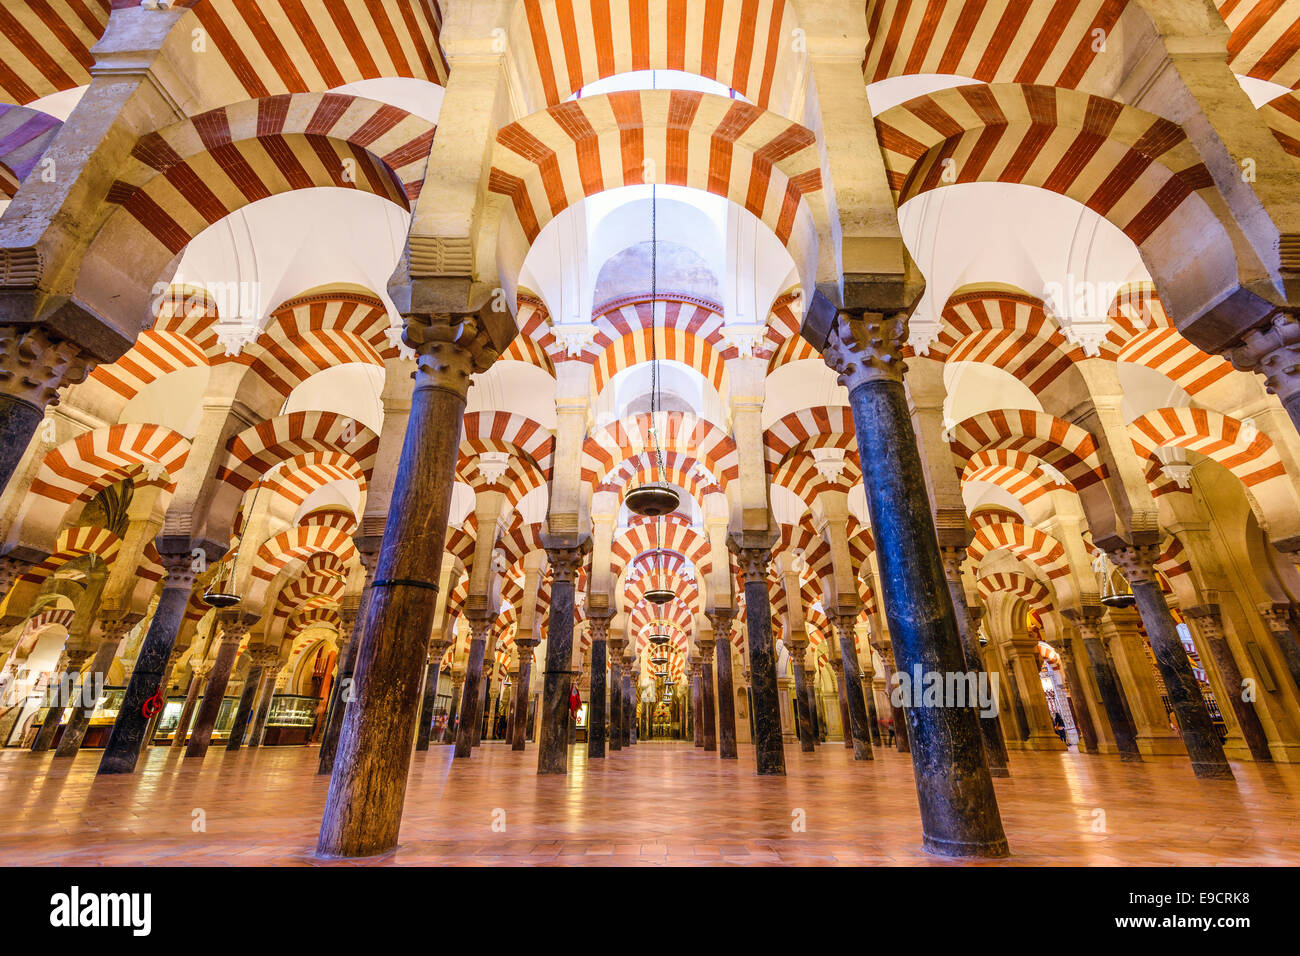 CORDOBA, Spagna - circa 2014: La Giralda di Siviglia. Il sito ha subito la conversione da una chiesa a una moschea e di nuovo indietro Foto Stock